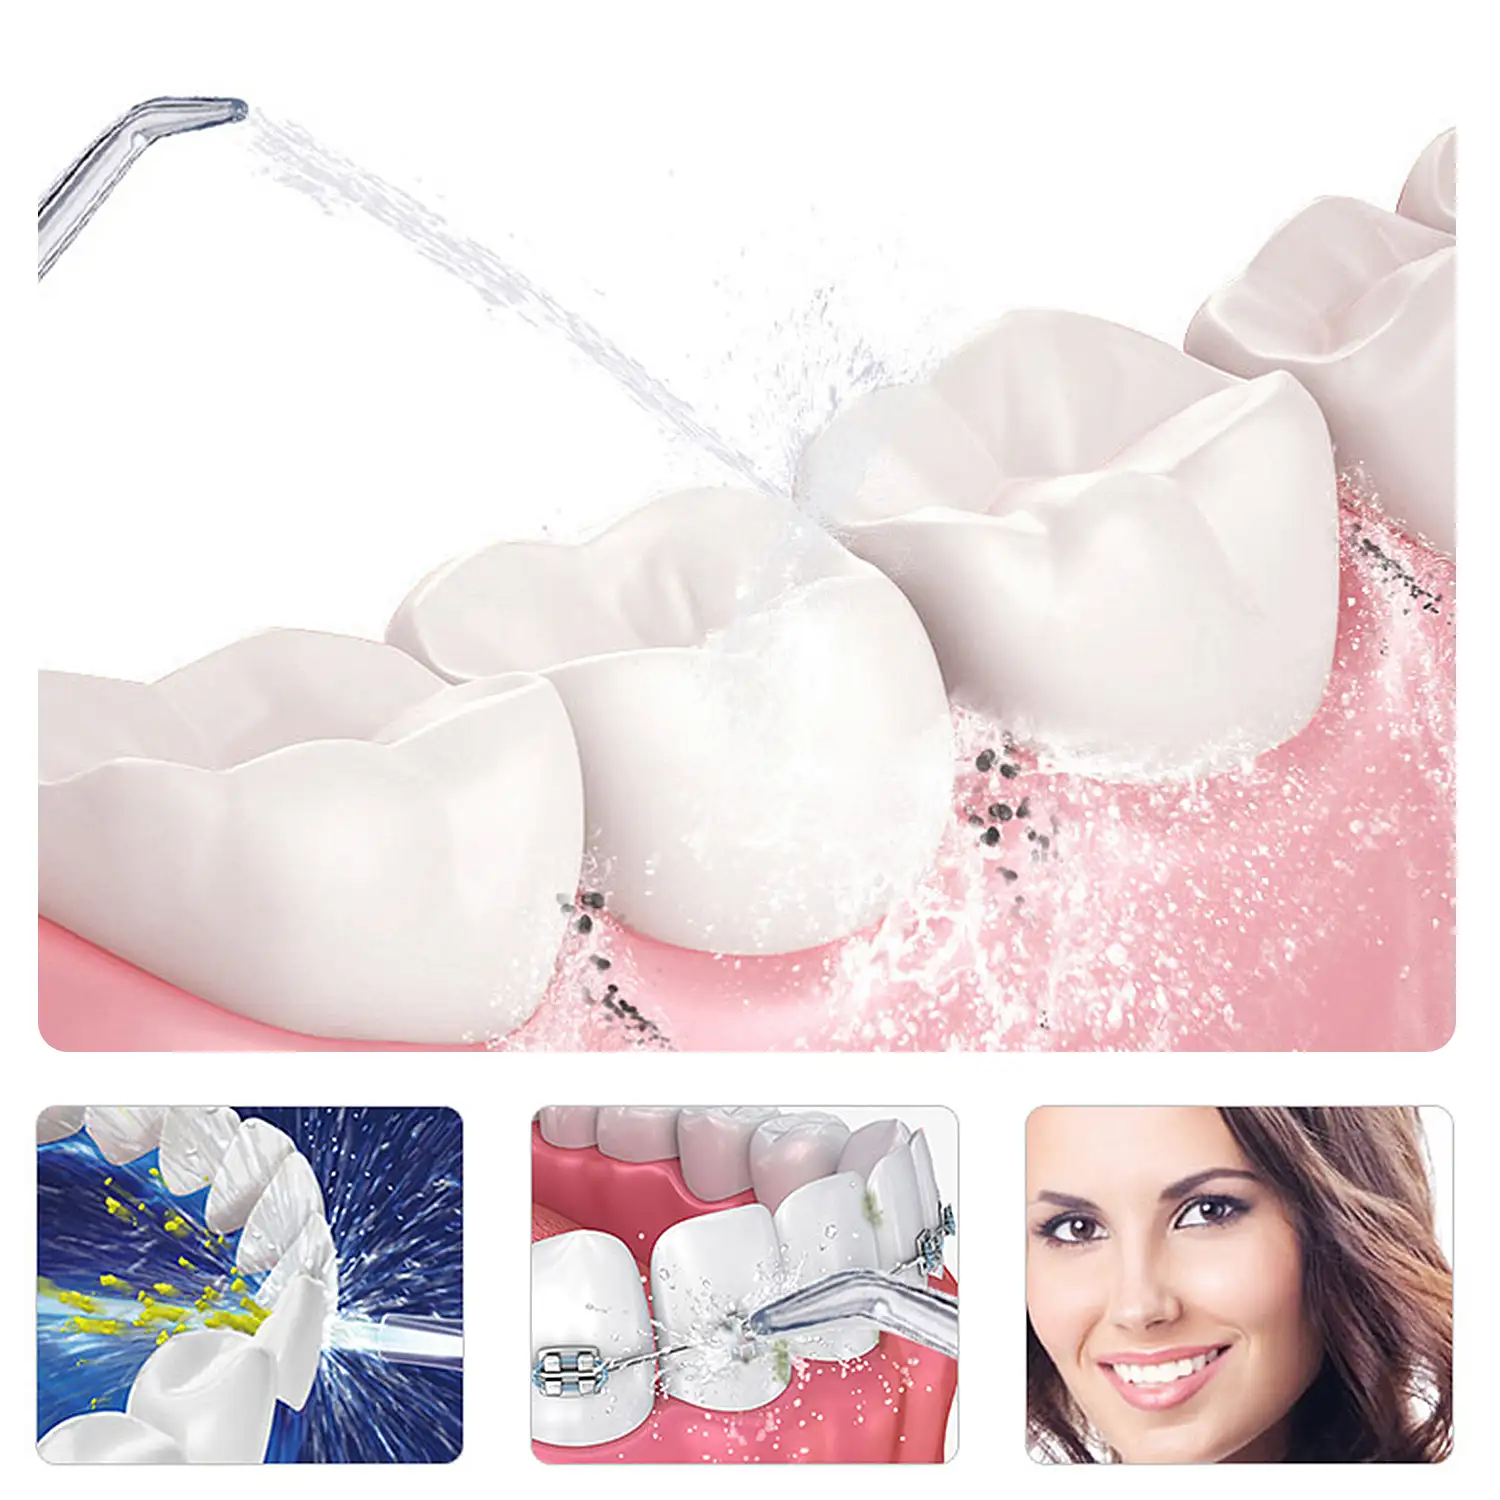 Irrigador bucal limpieza y belleza integral de tus dientes. Tecnología de pulsión alta frecuancia.Con 3 cabezales.